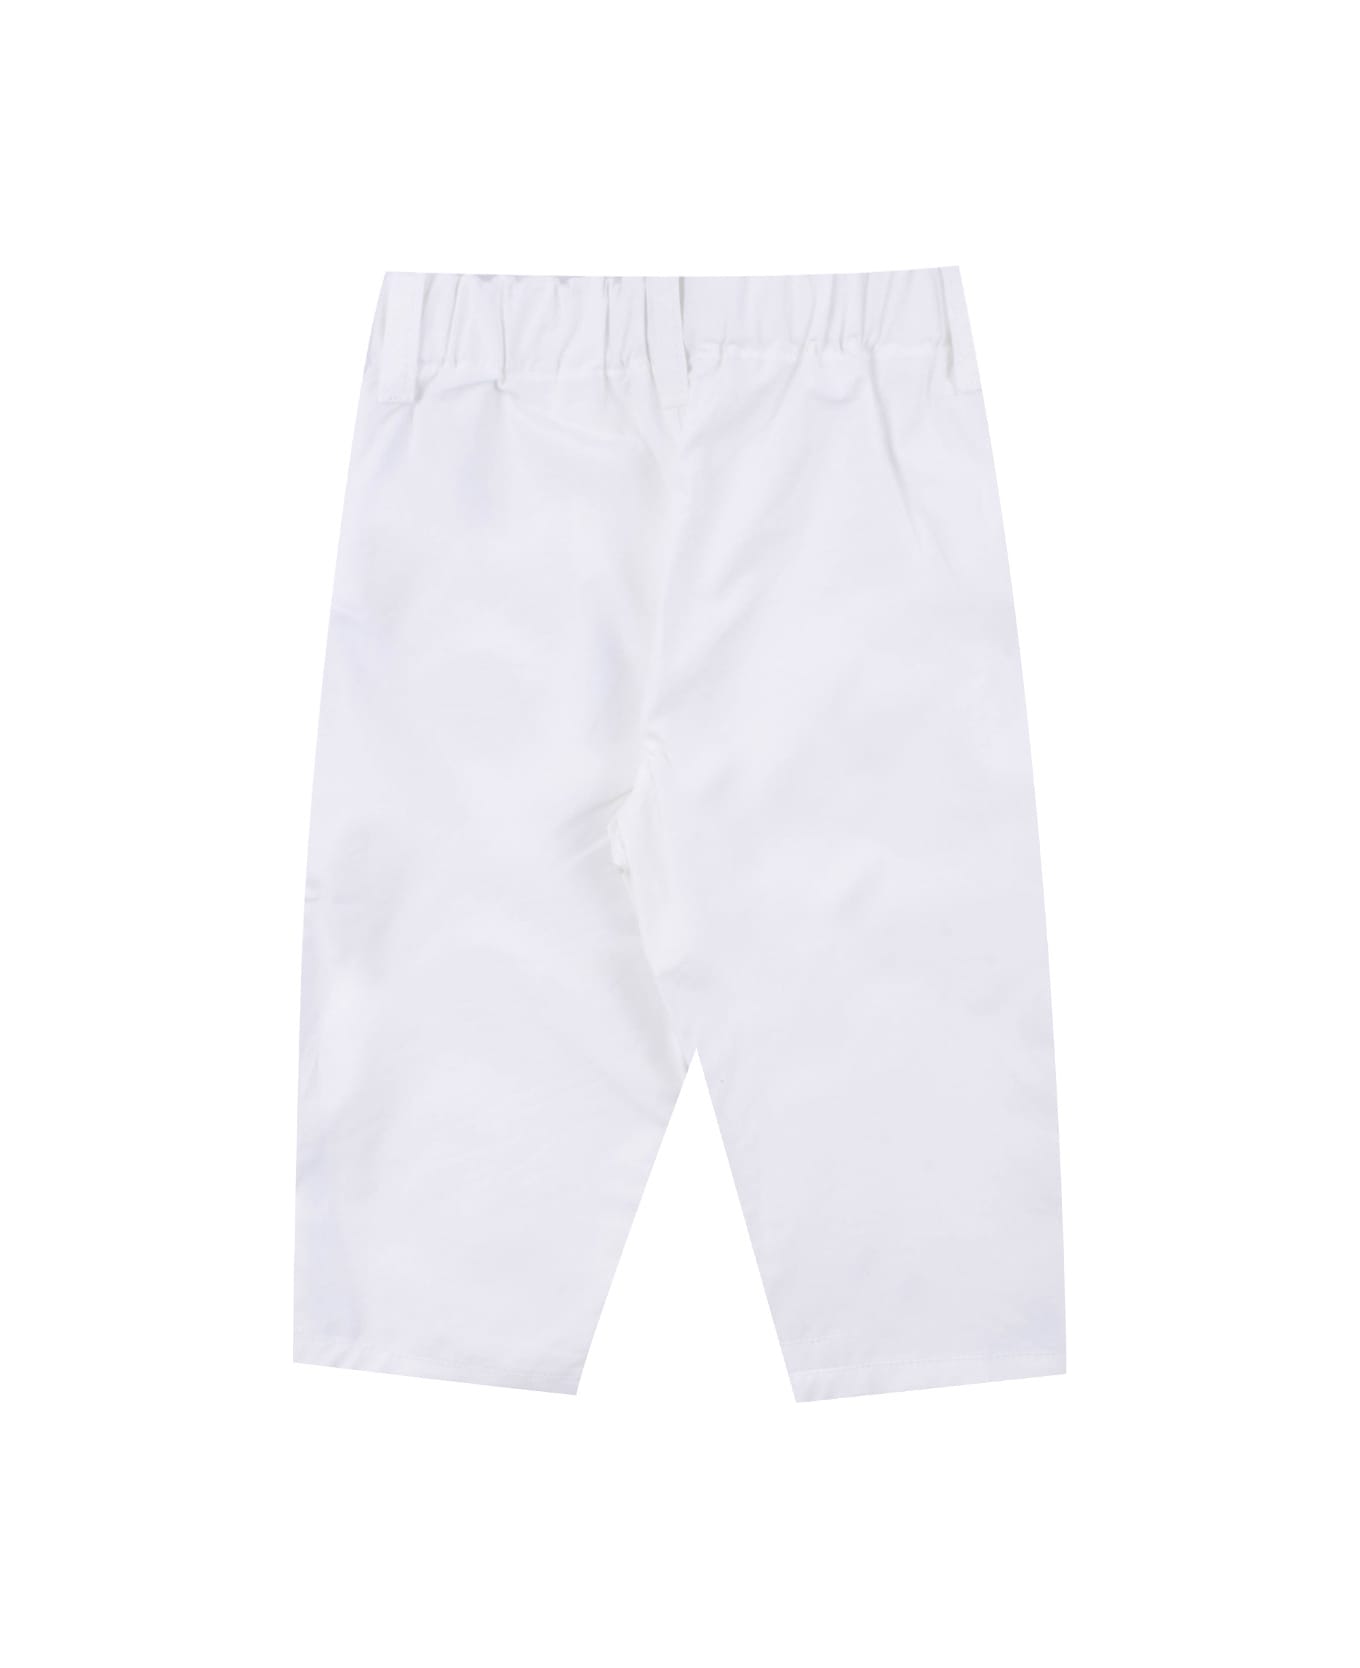 Emporio Armani Cotton Pants - White ボトムス